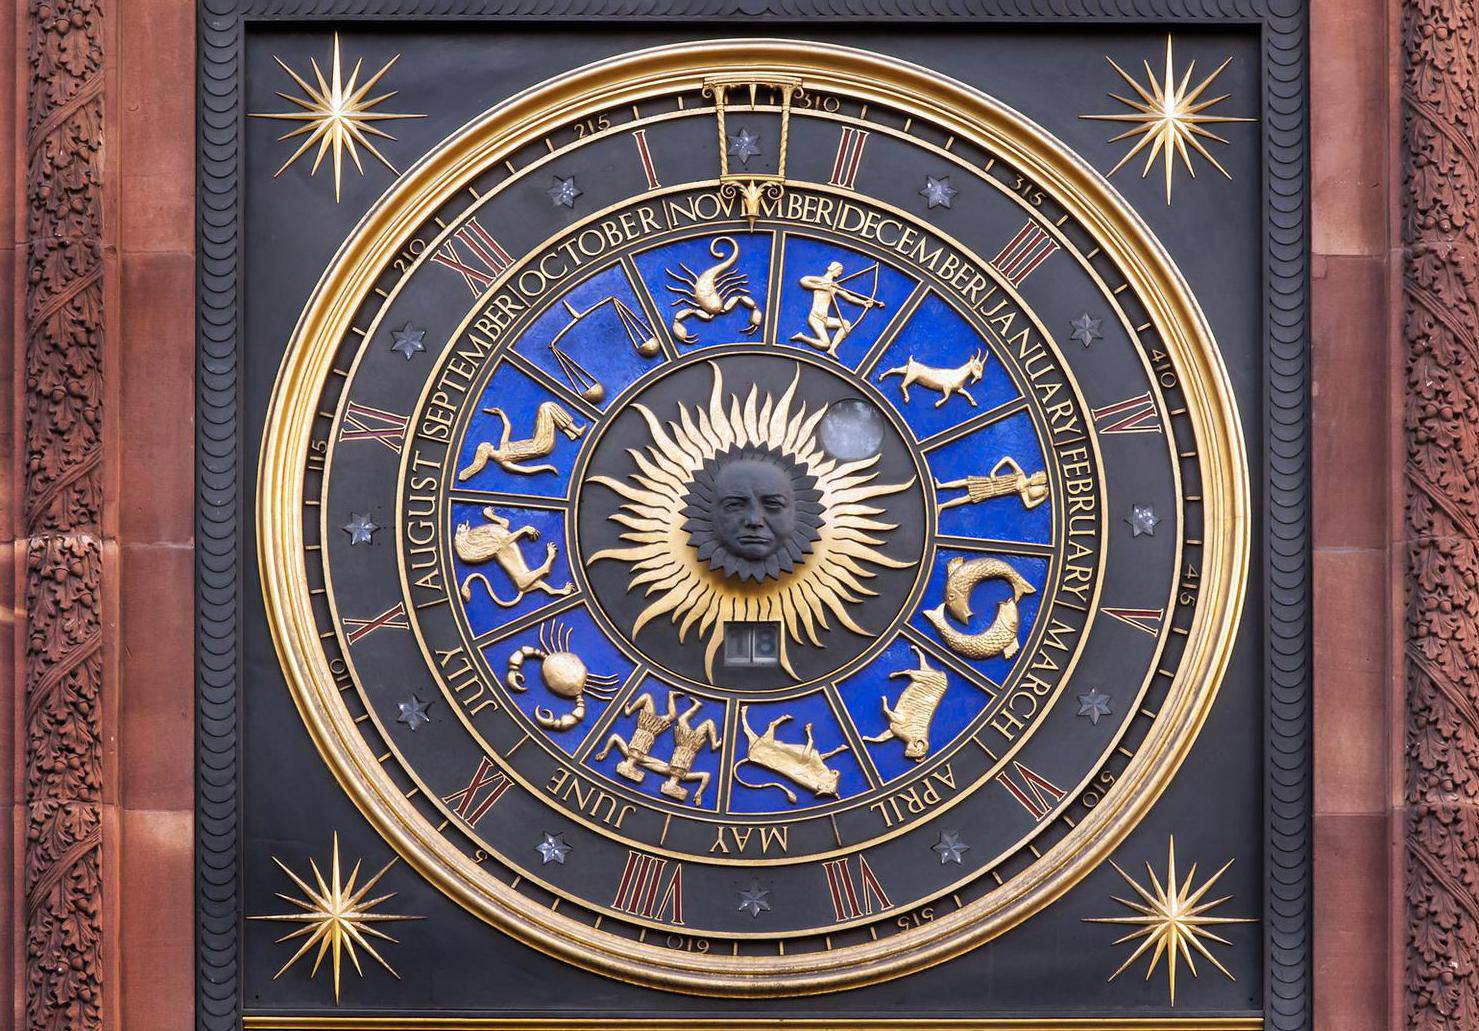 Mjesečni horoskop za prosinac: Rak će se povezati s nekim iz prošlosti, a Lav pronaći ljubav